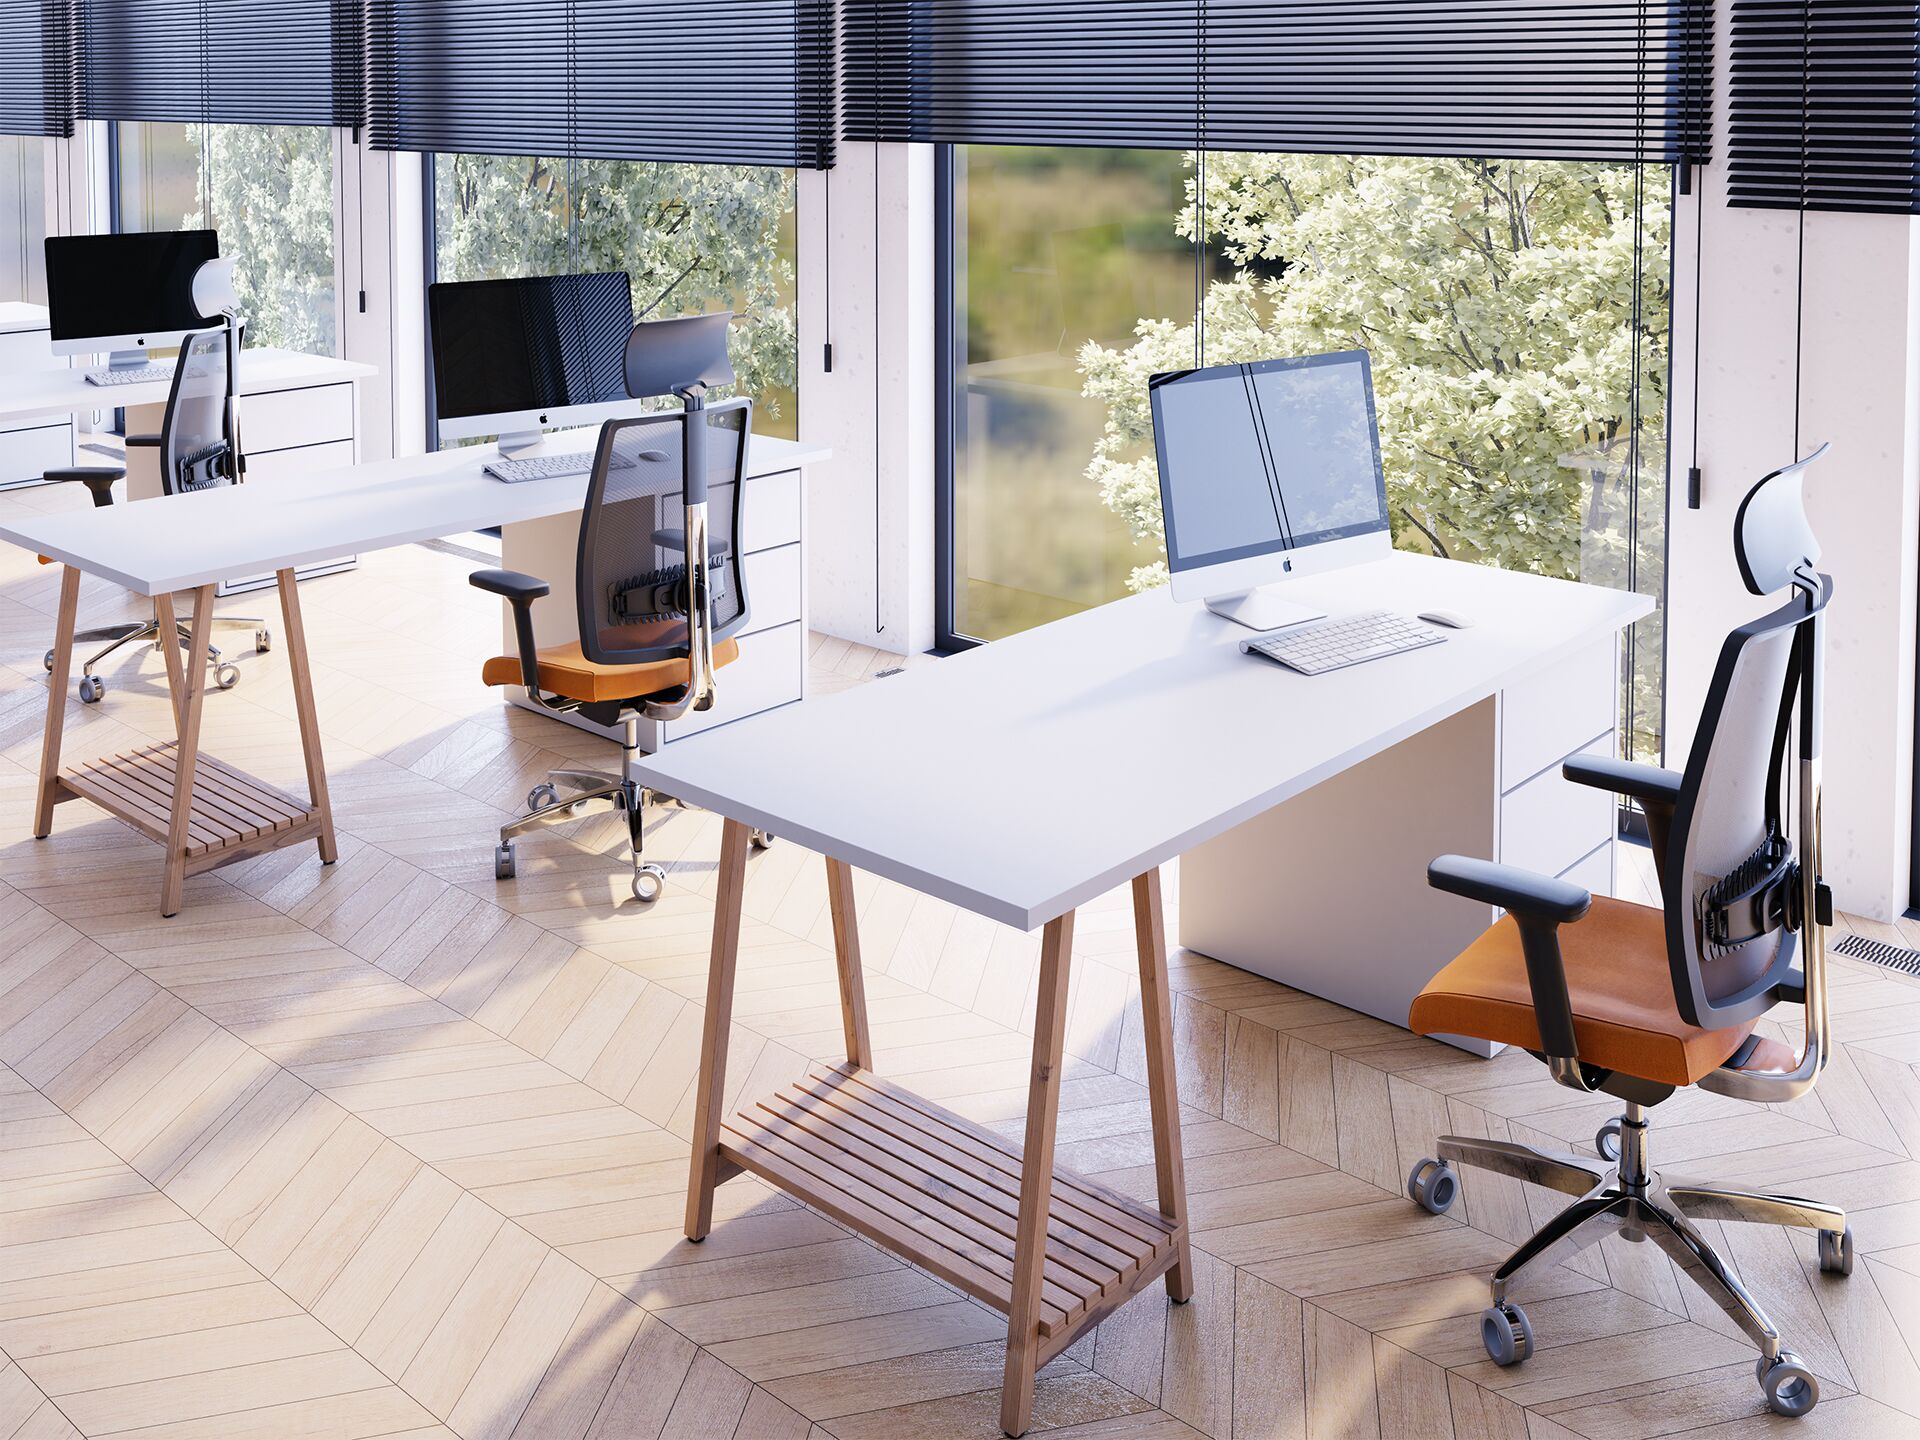 Pomieszczenie biurowe z fotelami biurowymi z pomarańczowymi siedzeniami stojącymi przy białych stołach od tyłu